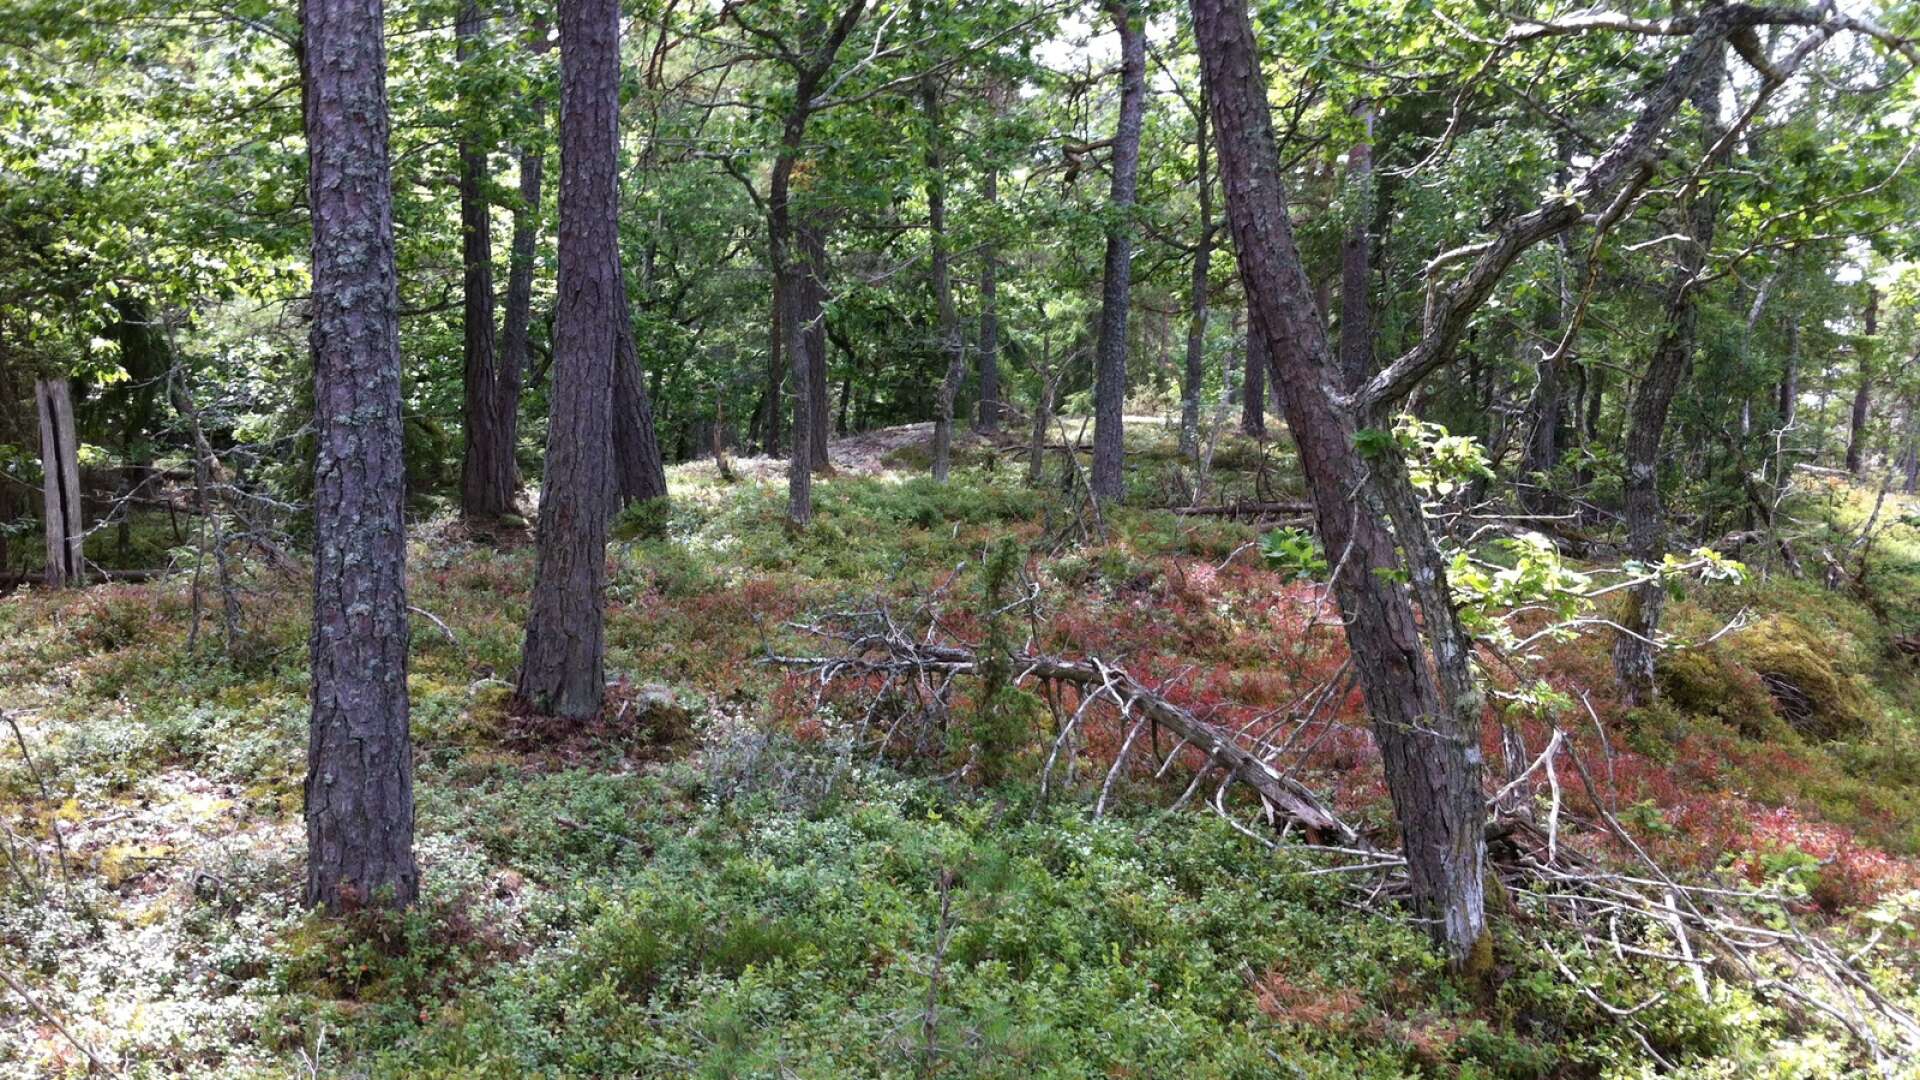 Beslutet om att bilda naturreservat vid Kållands skärgårdar kommer att dröja. Enligt Örjan Nilsson är det sannolikt att staten fattar det formella beslutet år 2025 eller 2026. På bild ön Klitt, som idag är en del av naturvårdsområdet och som kommer att ingå i det kommande beslutet om naturreservatet. 